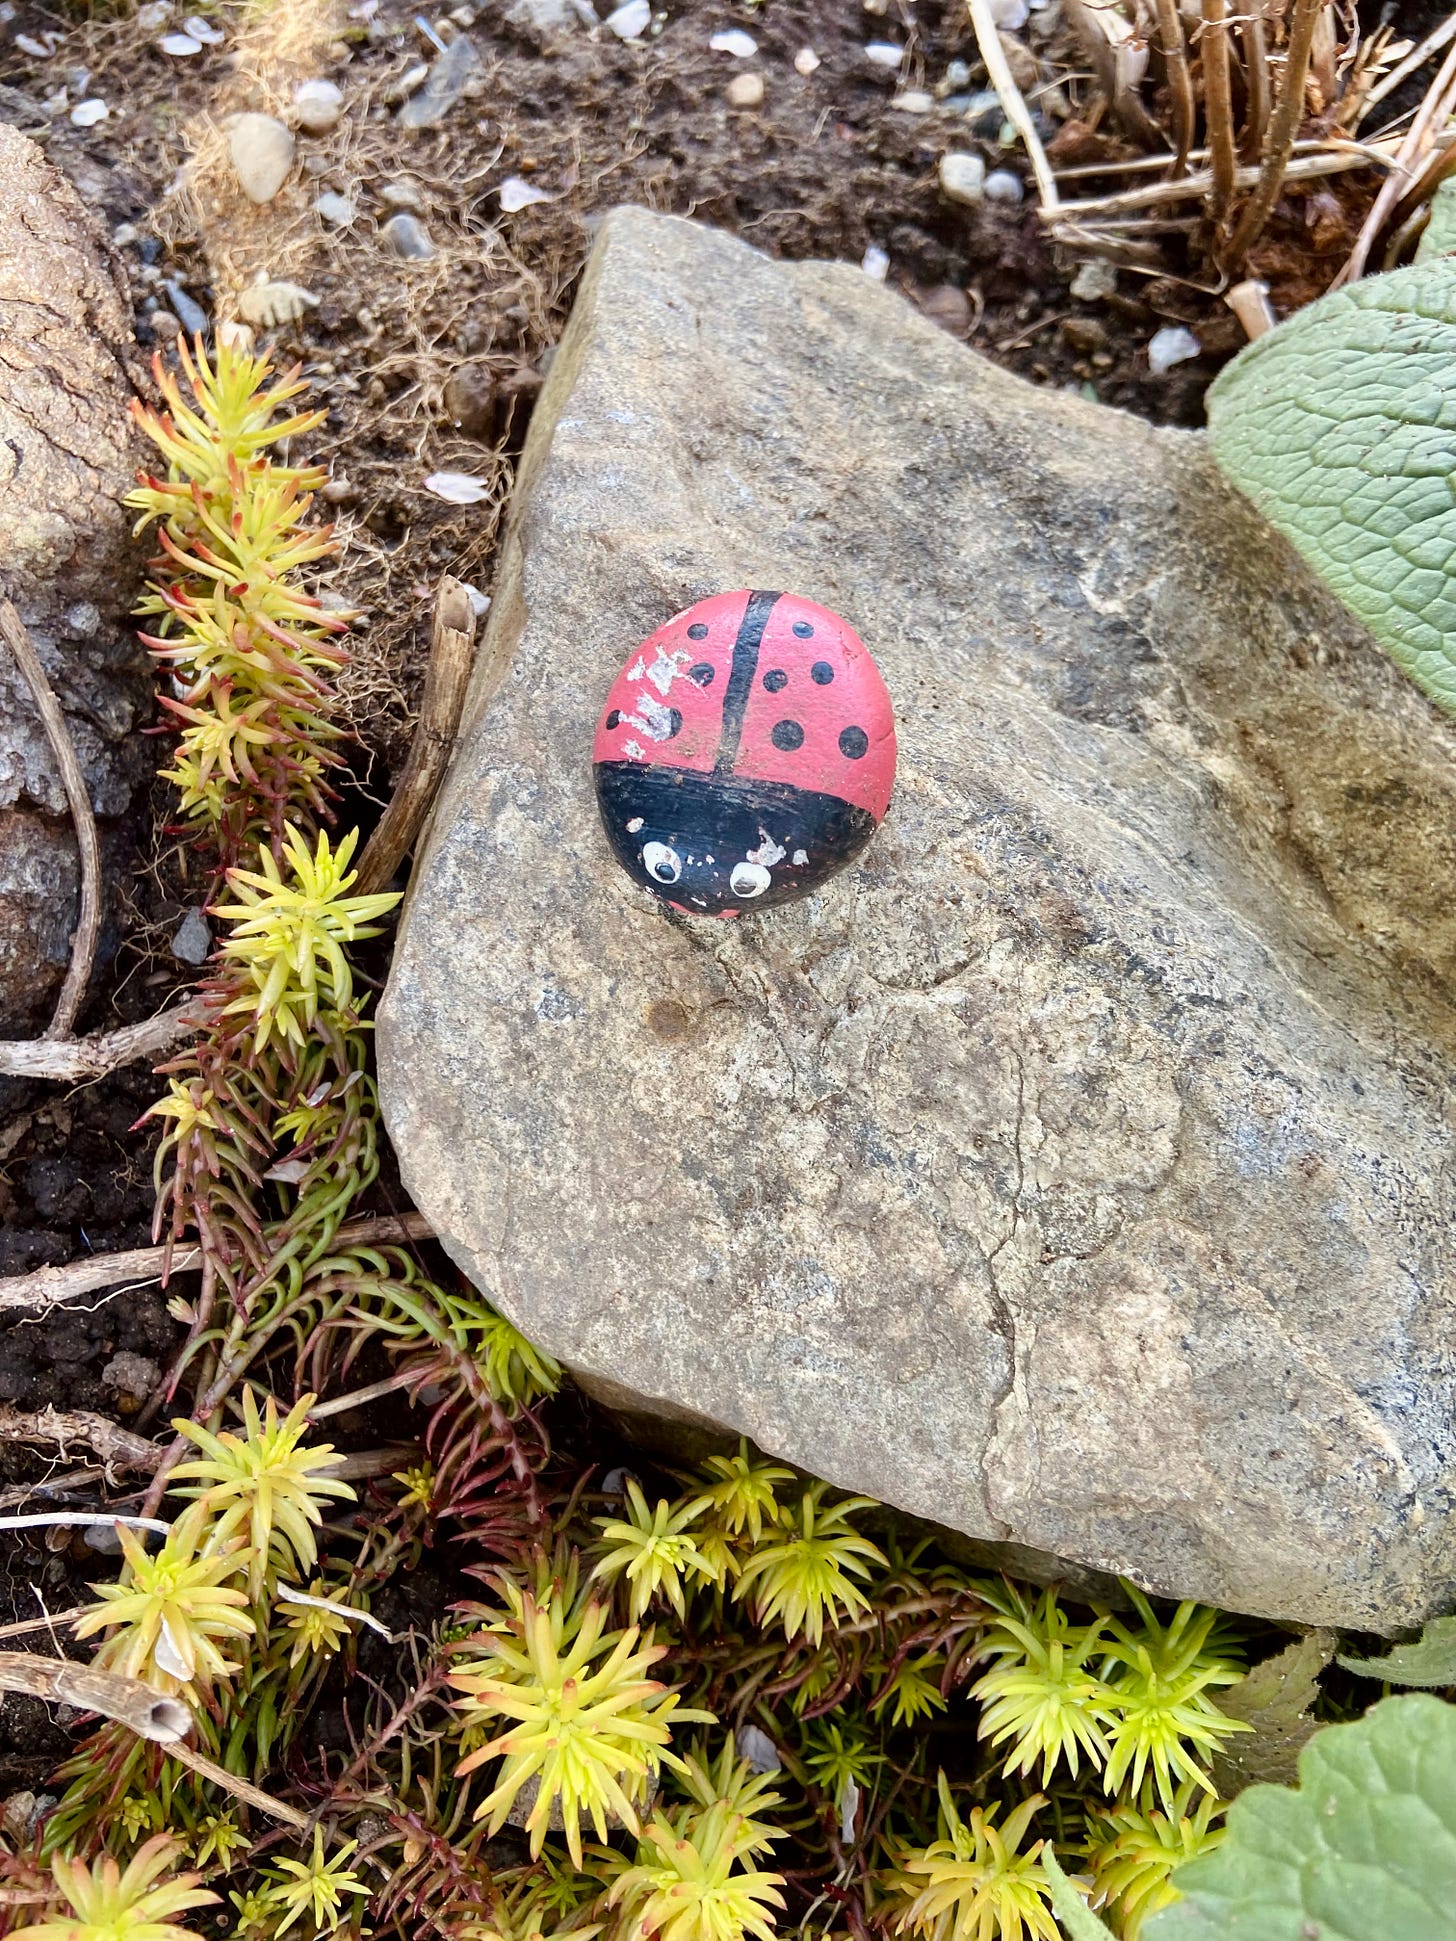 a stone painted like a ladybug, sitting on a big rock